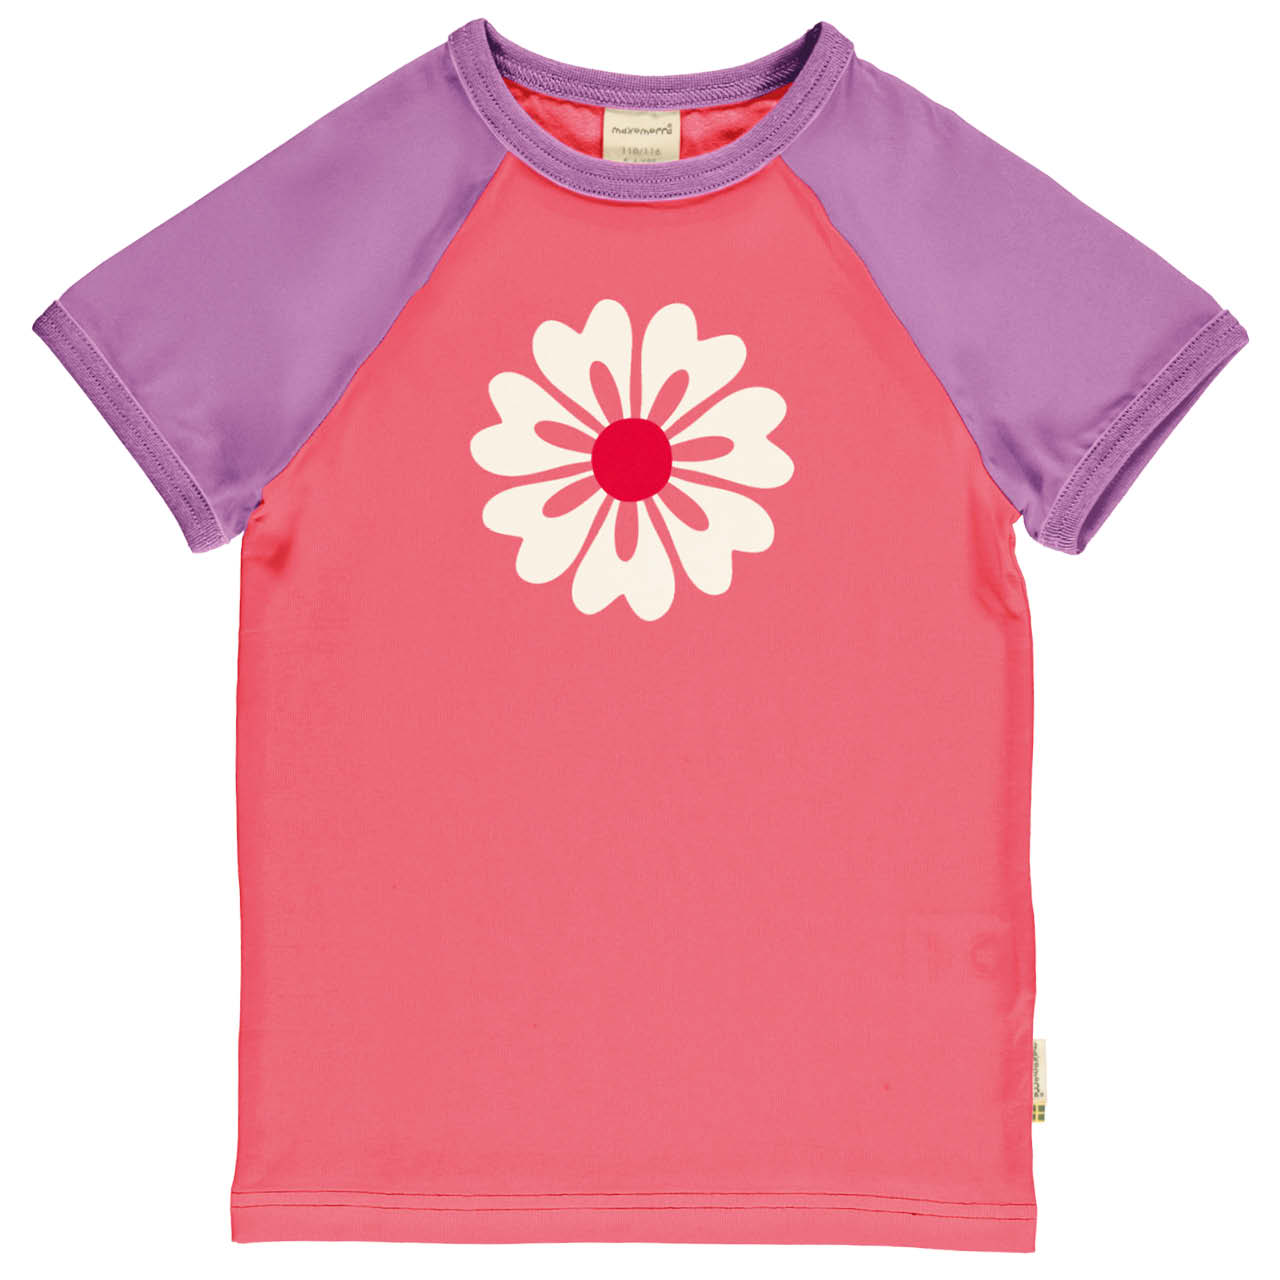 Weiches Raglan T-Shirt Blume pink